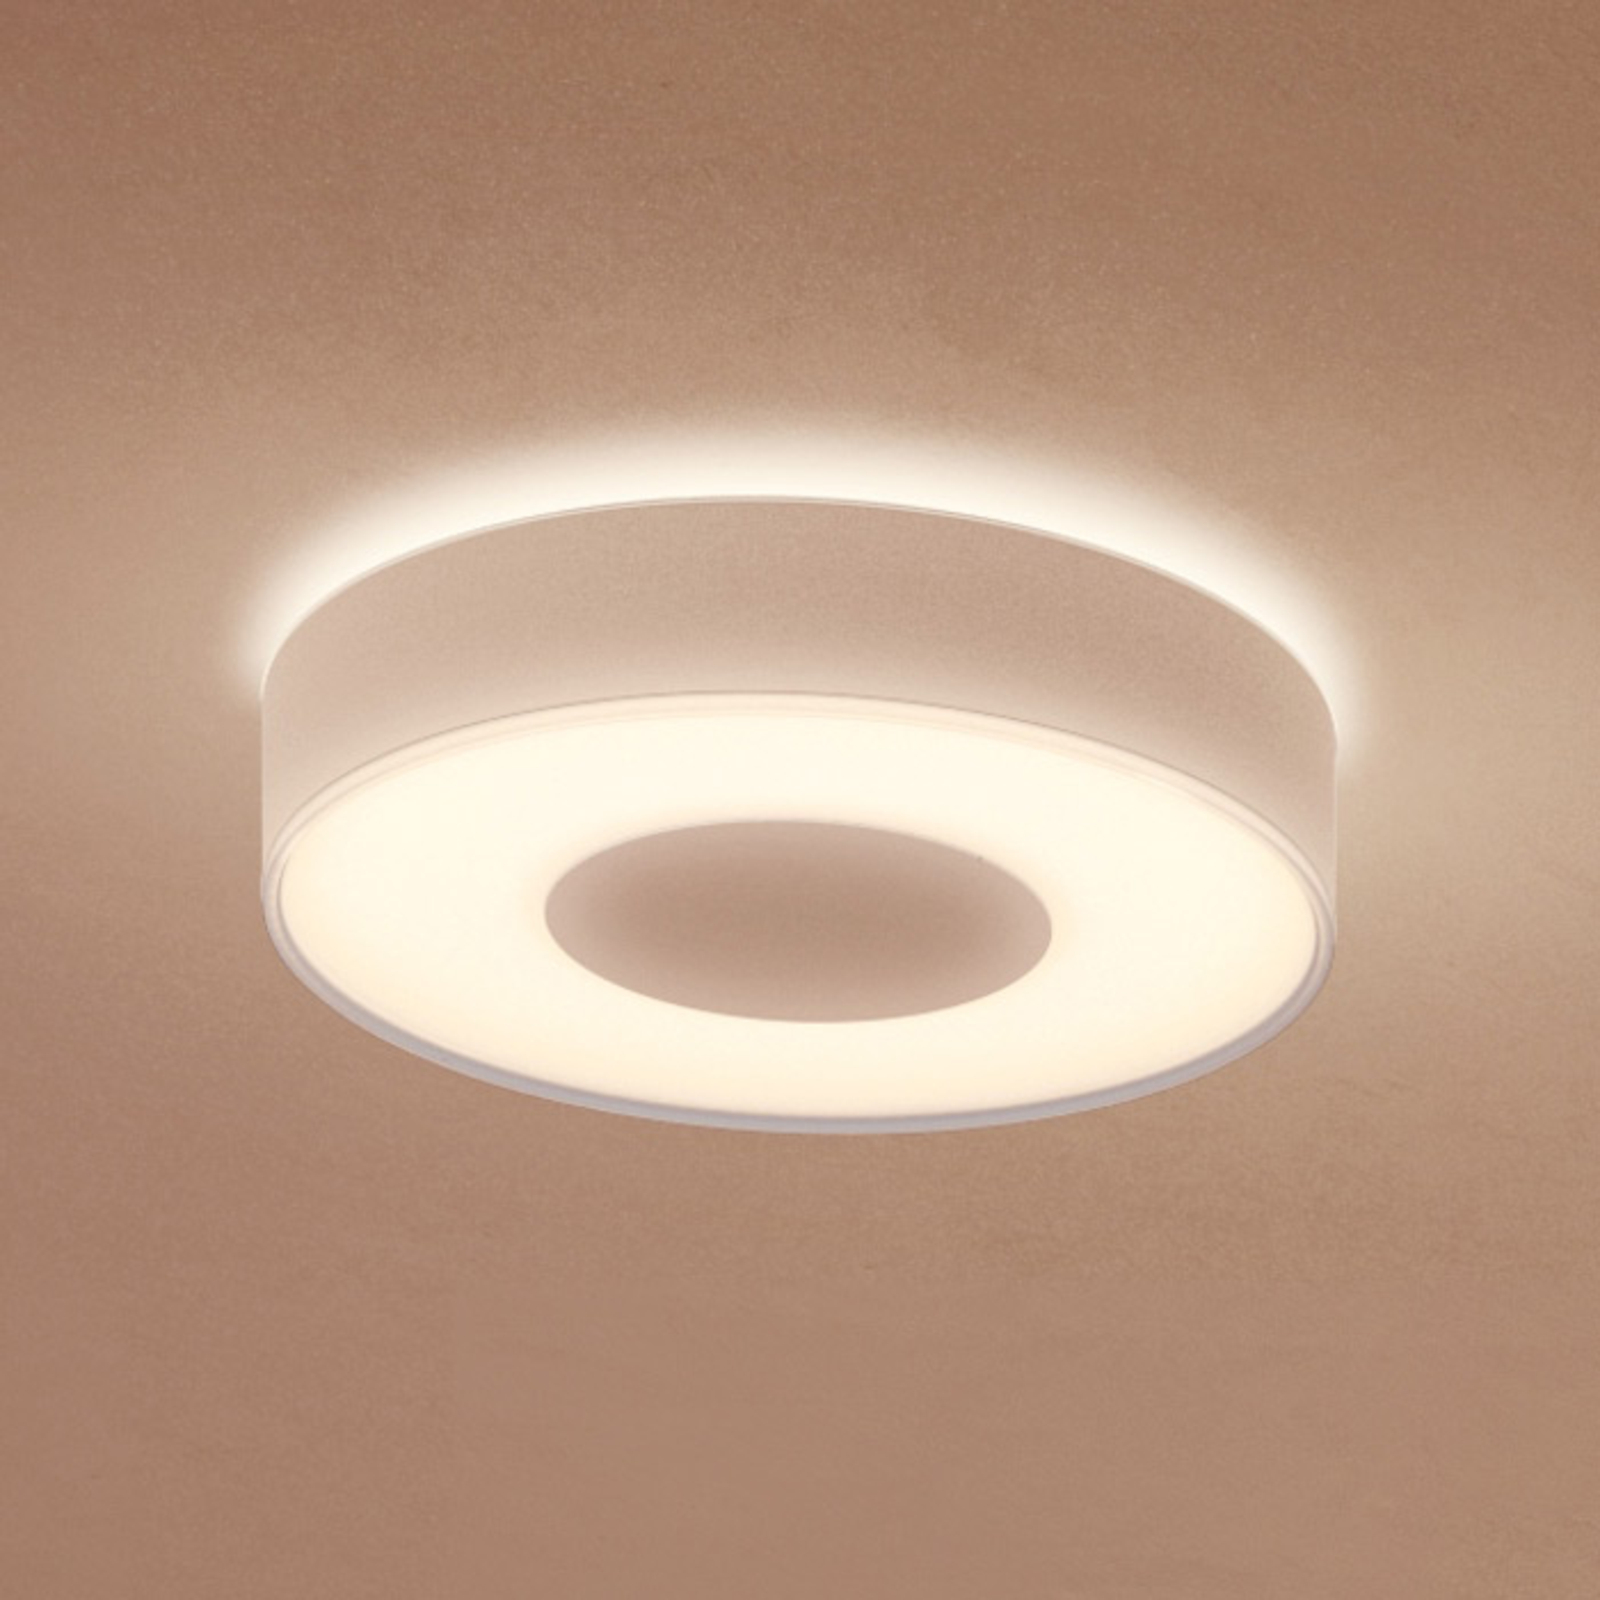 Philips Hue Xamento plafondlamp White Color | Lampen24.nl